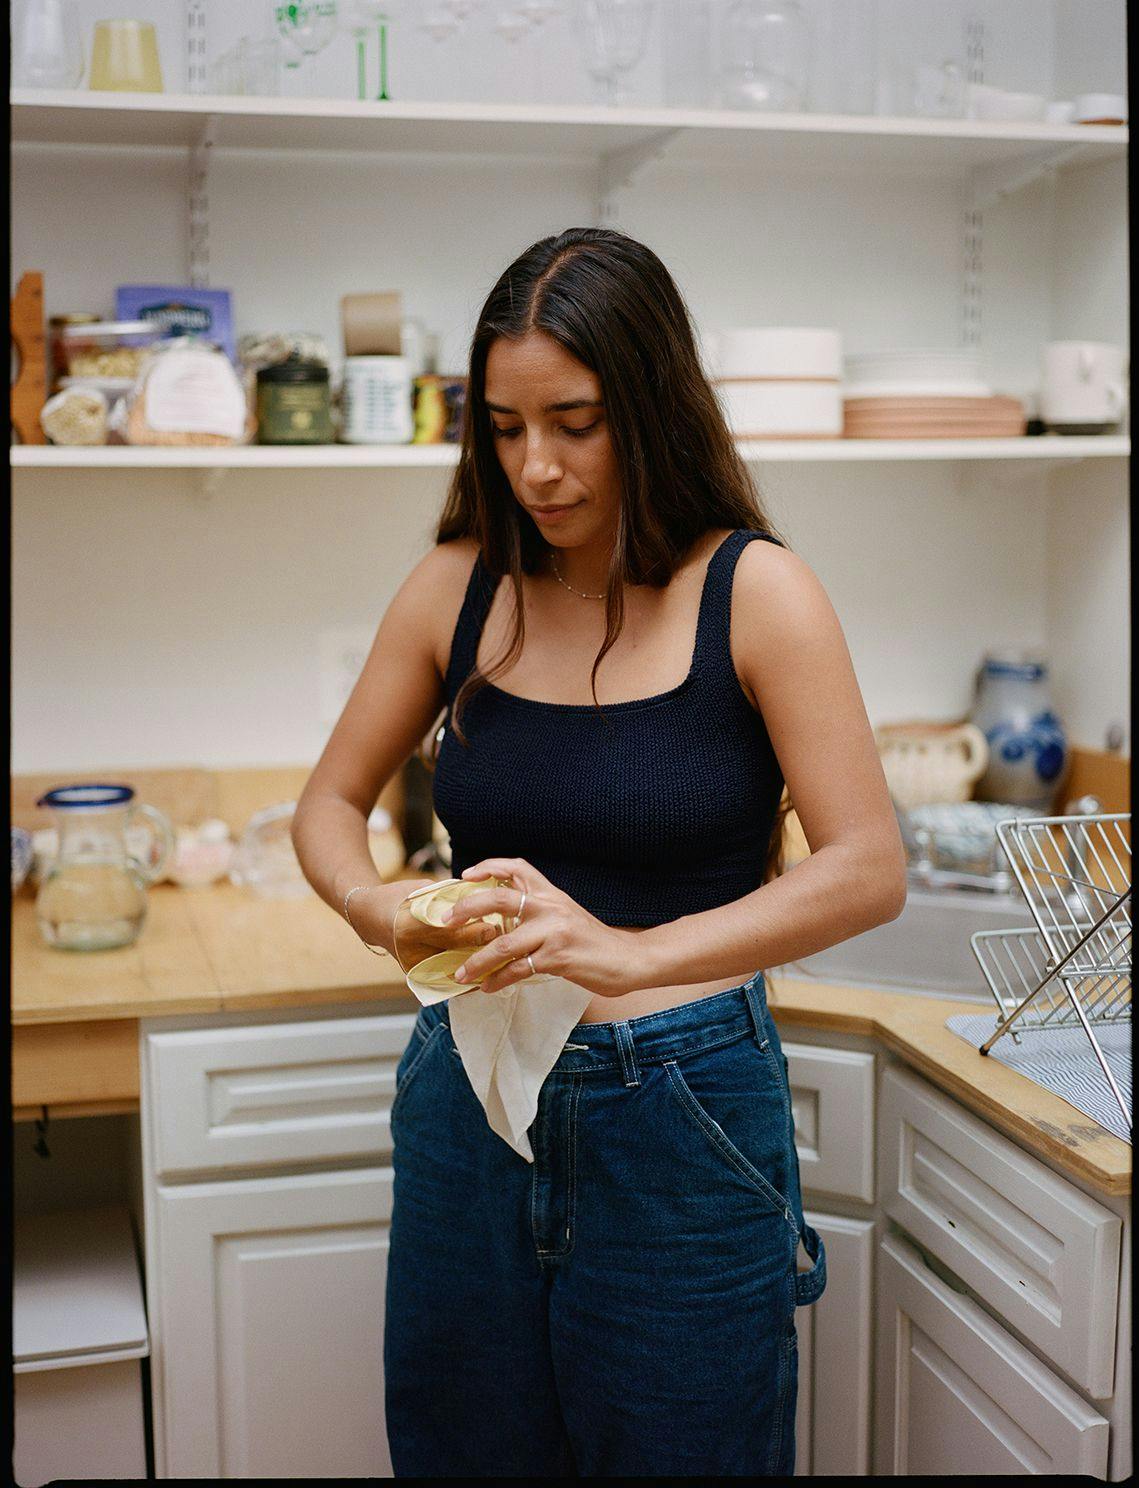 Bianca in her kitchen